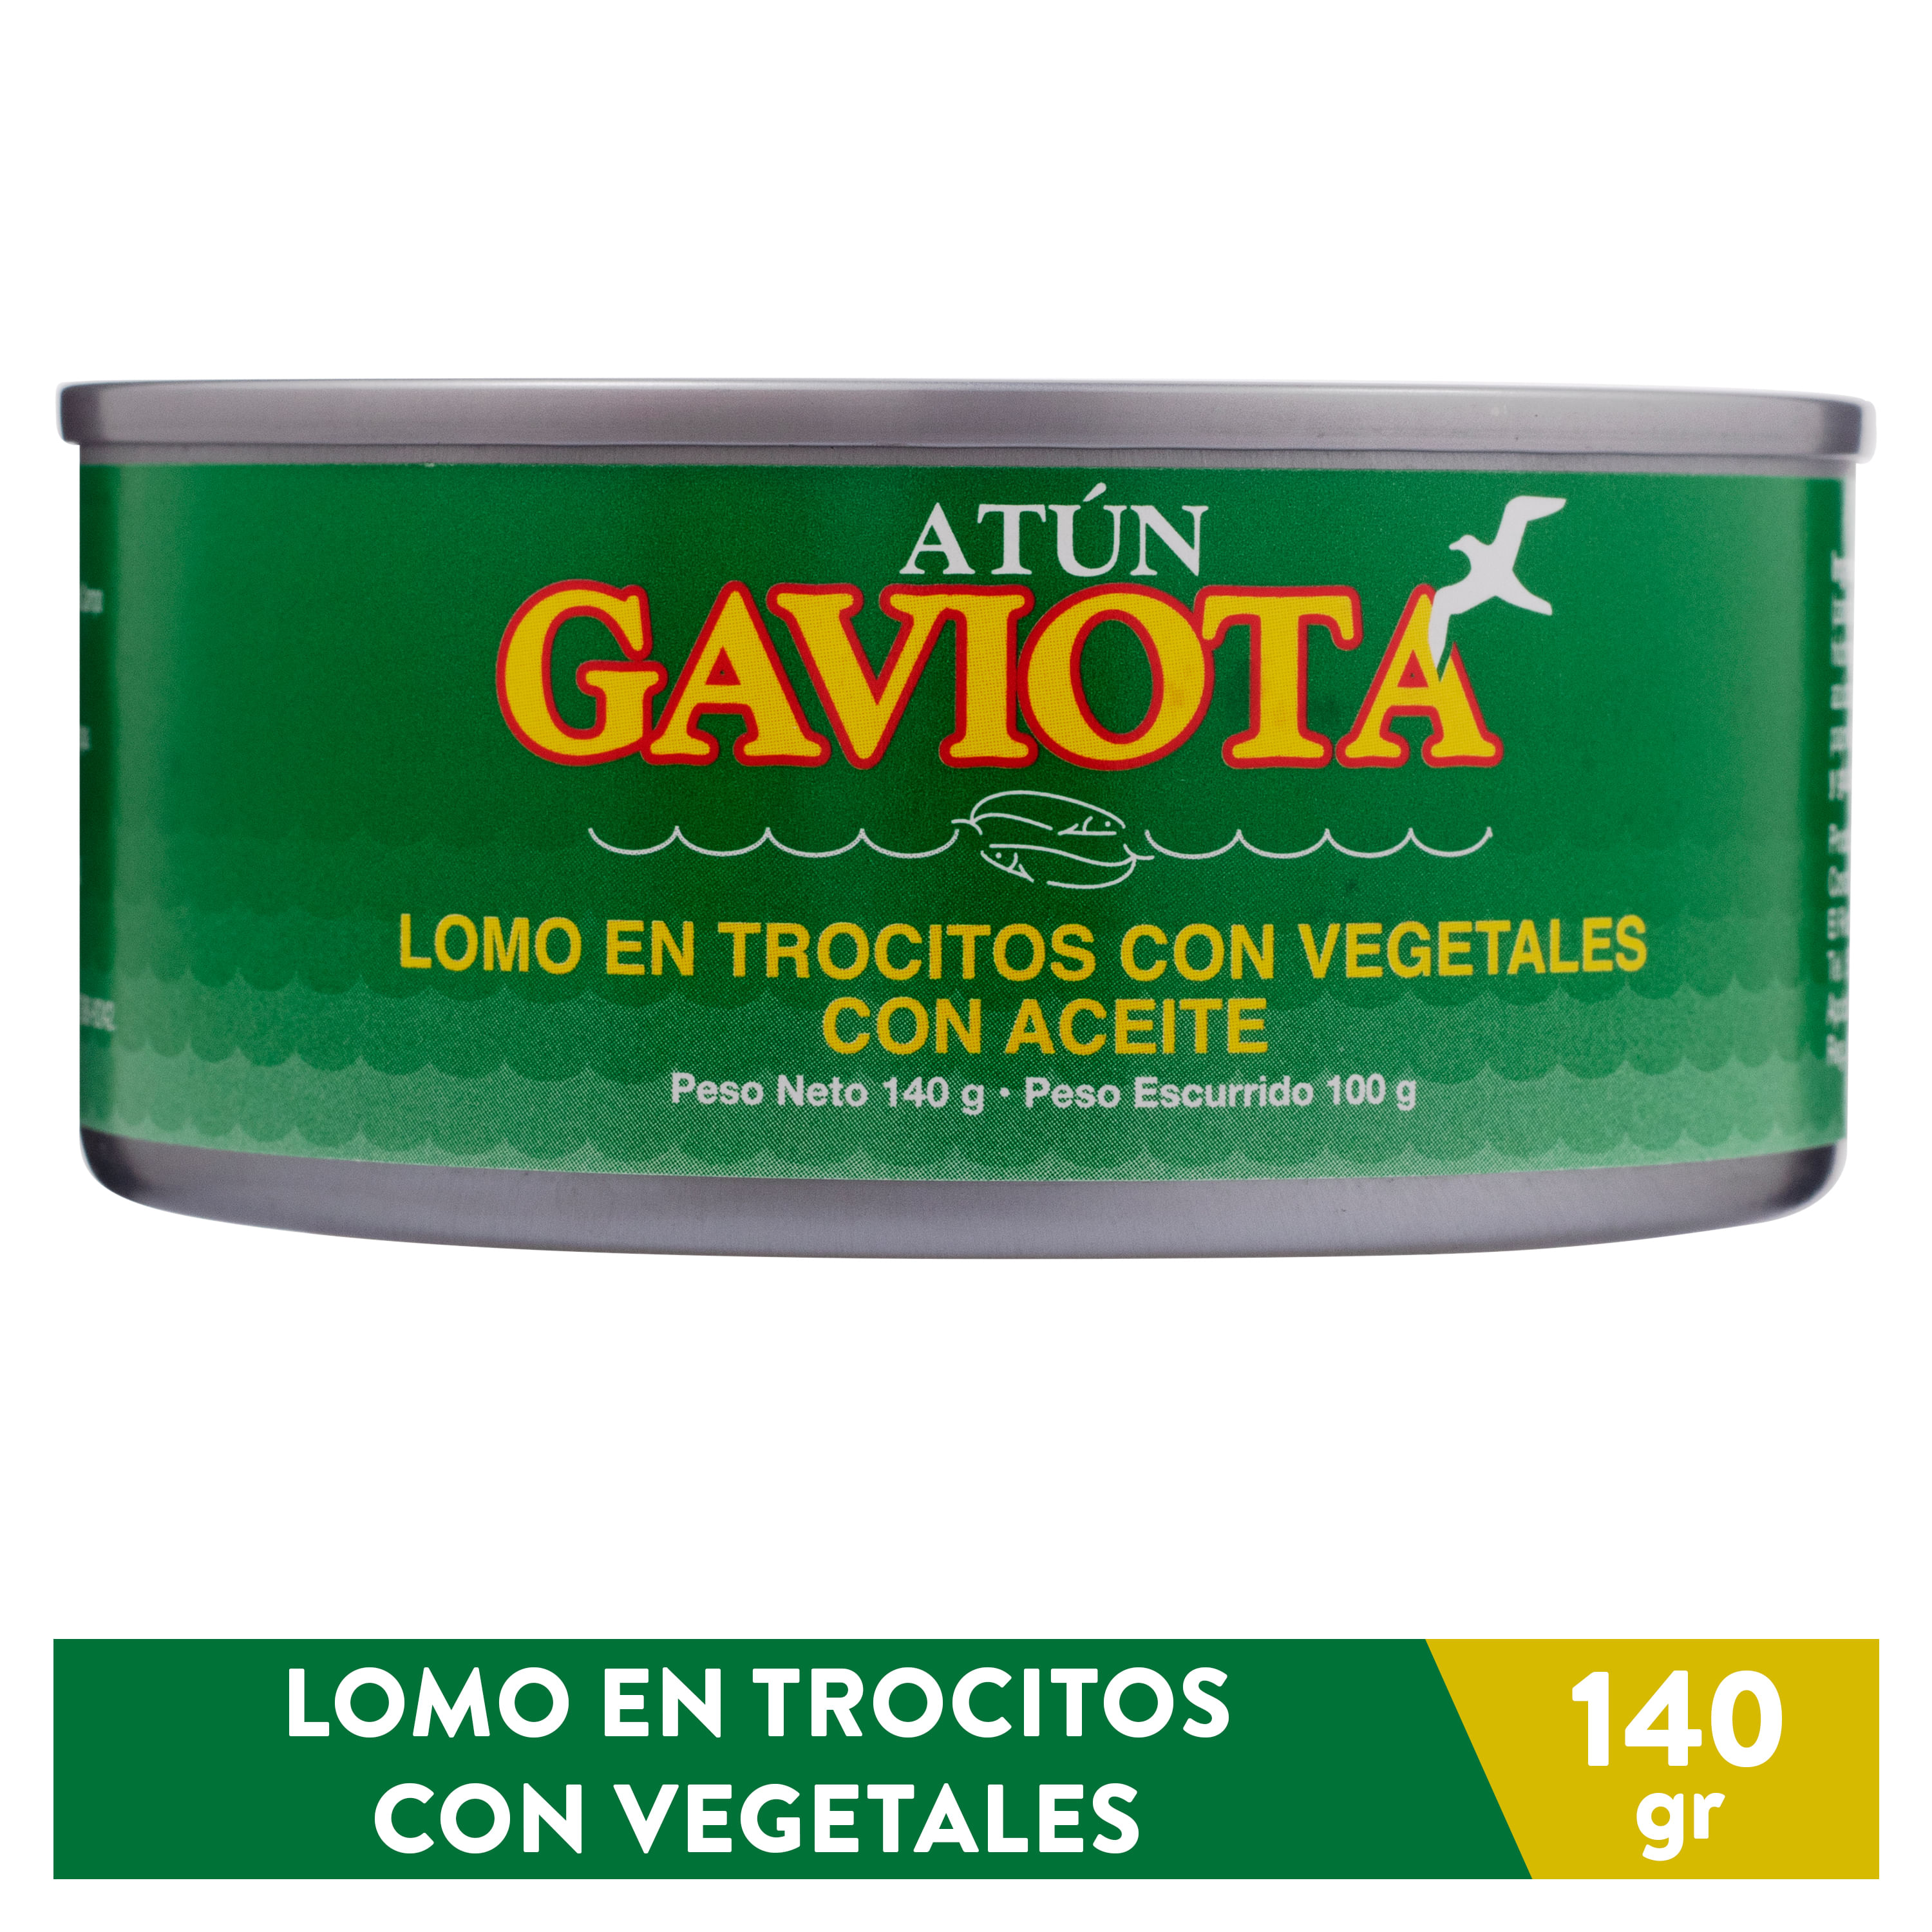 Atun-Gaviota-Lomo-Trocitos-Con-Vegetales-100gr-1-7616